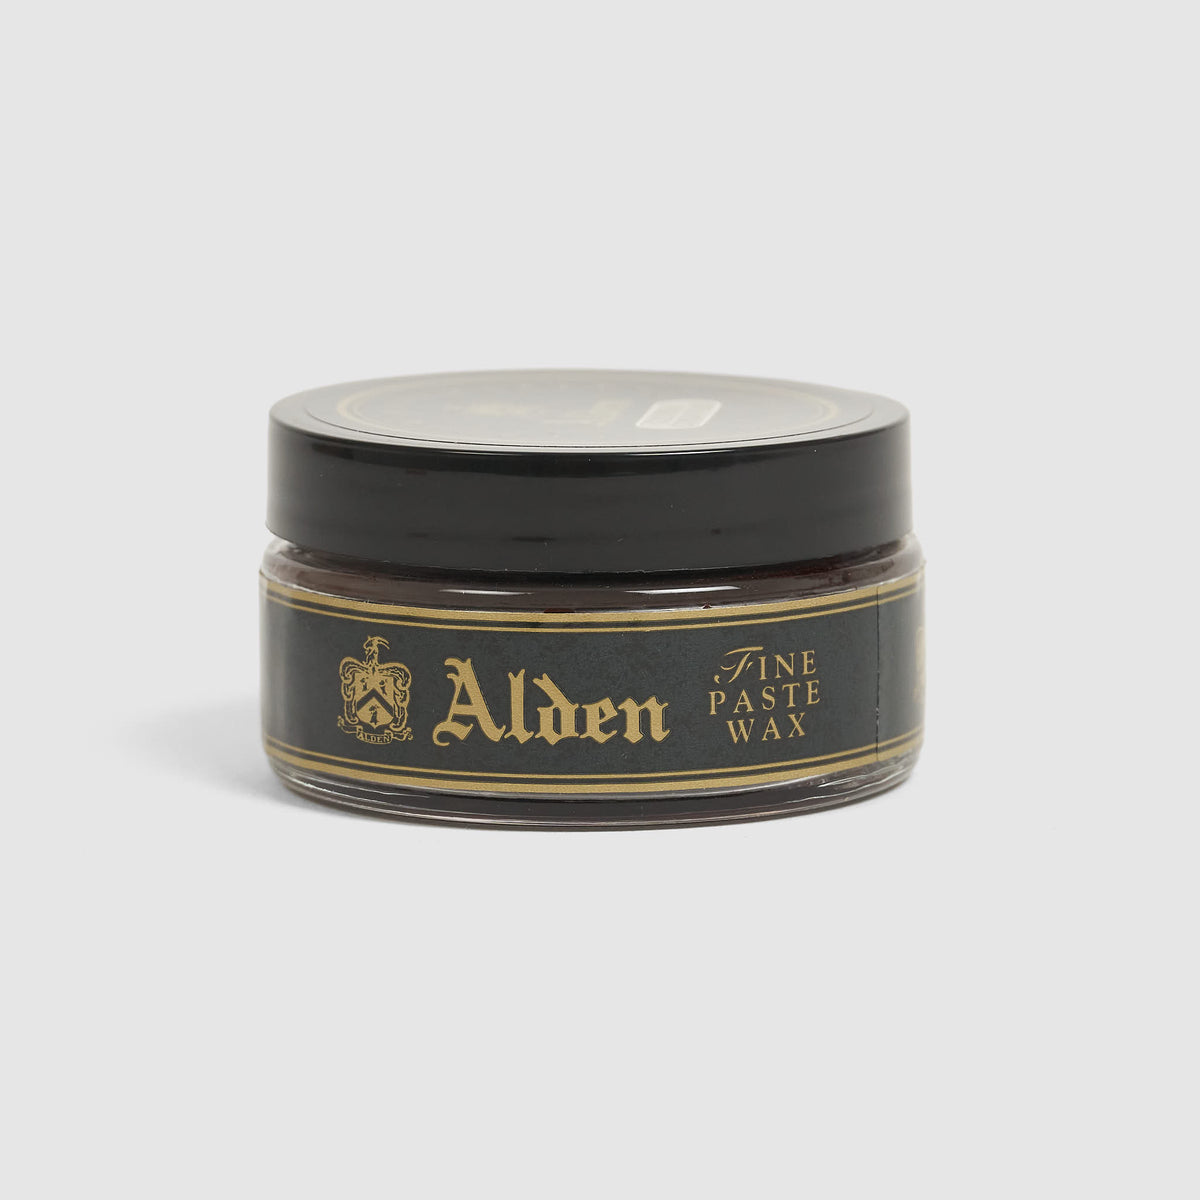 Alden Shoe Cream Color 8 Cordovan